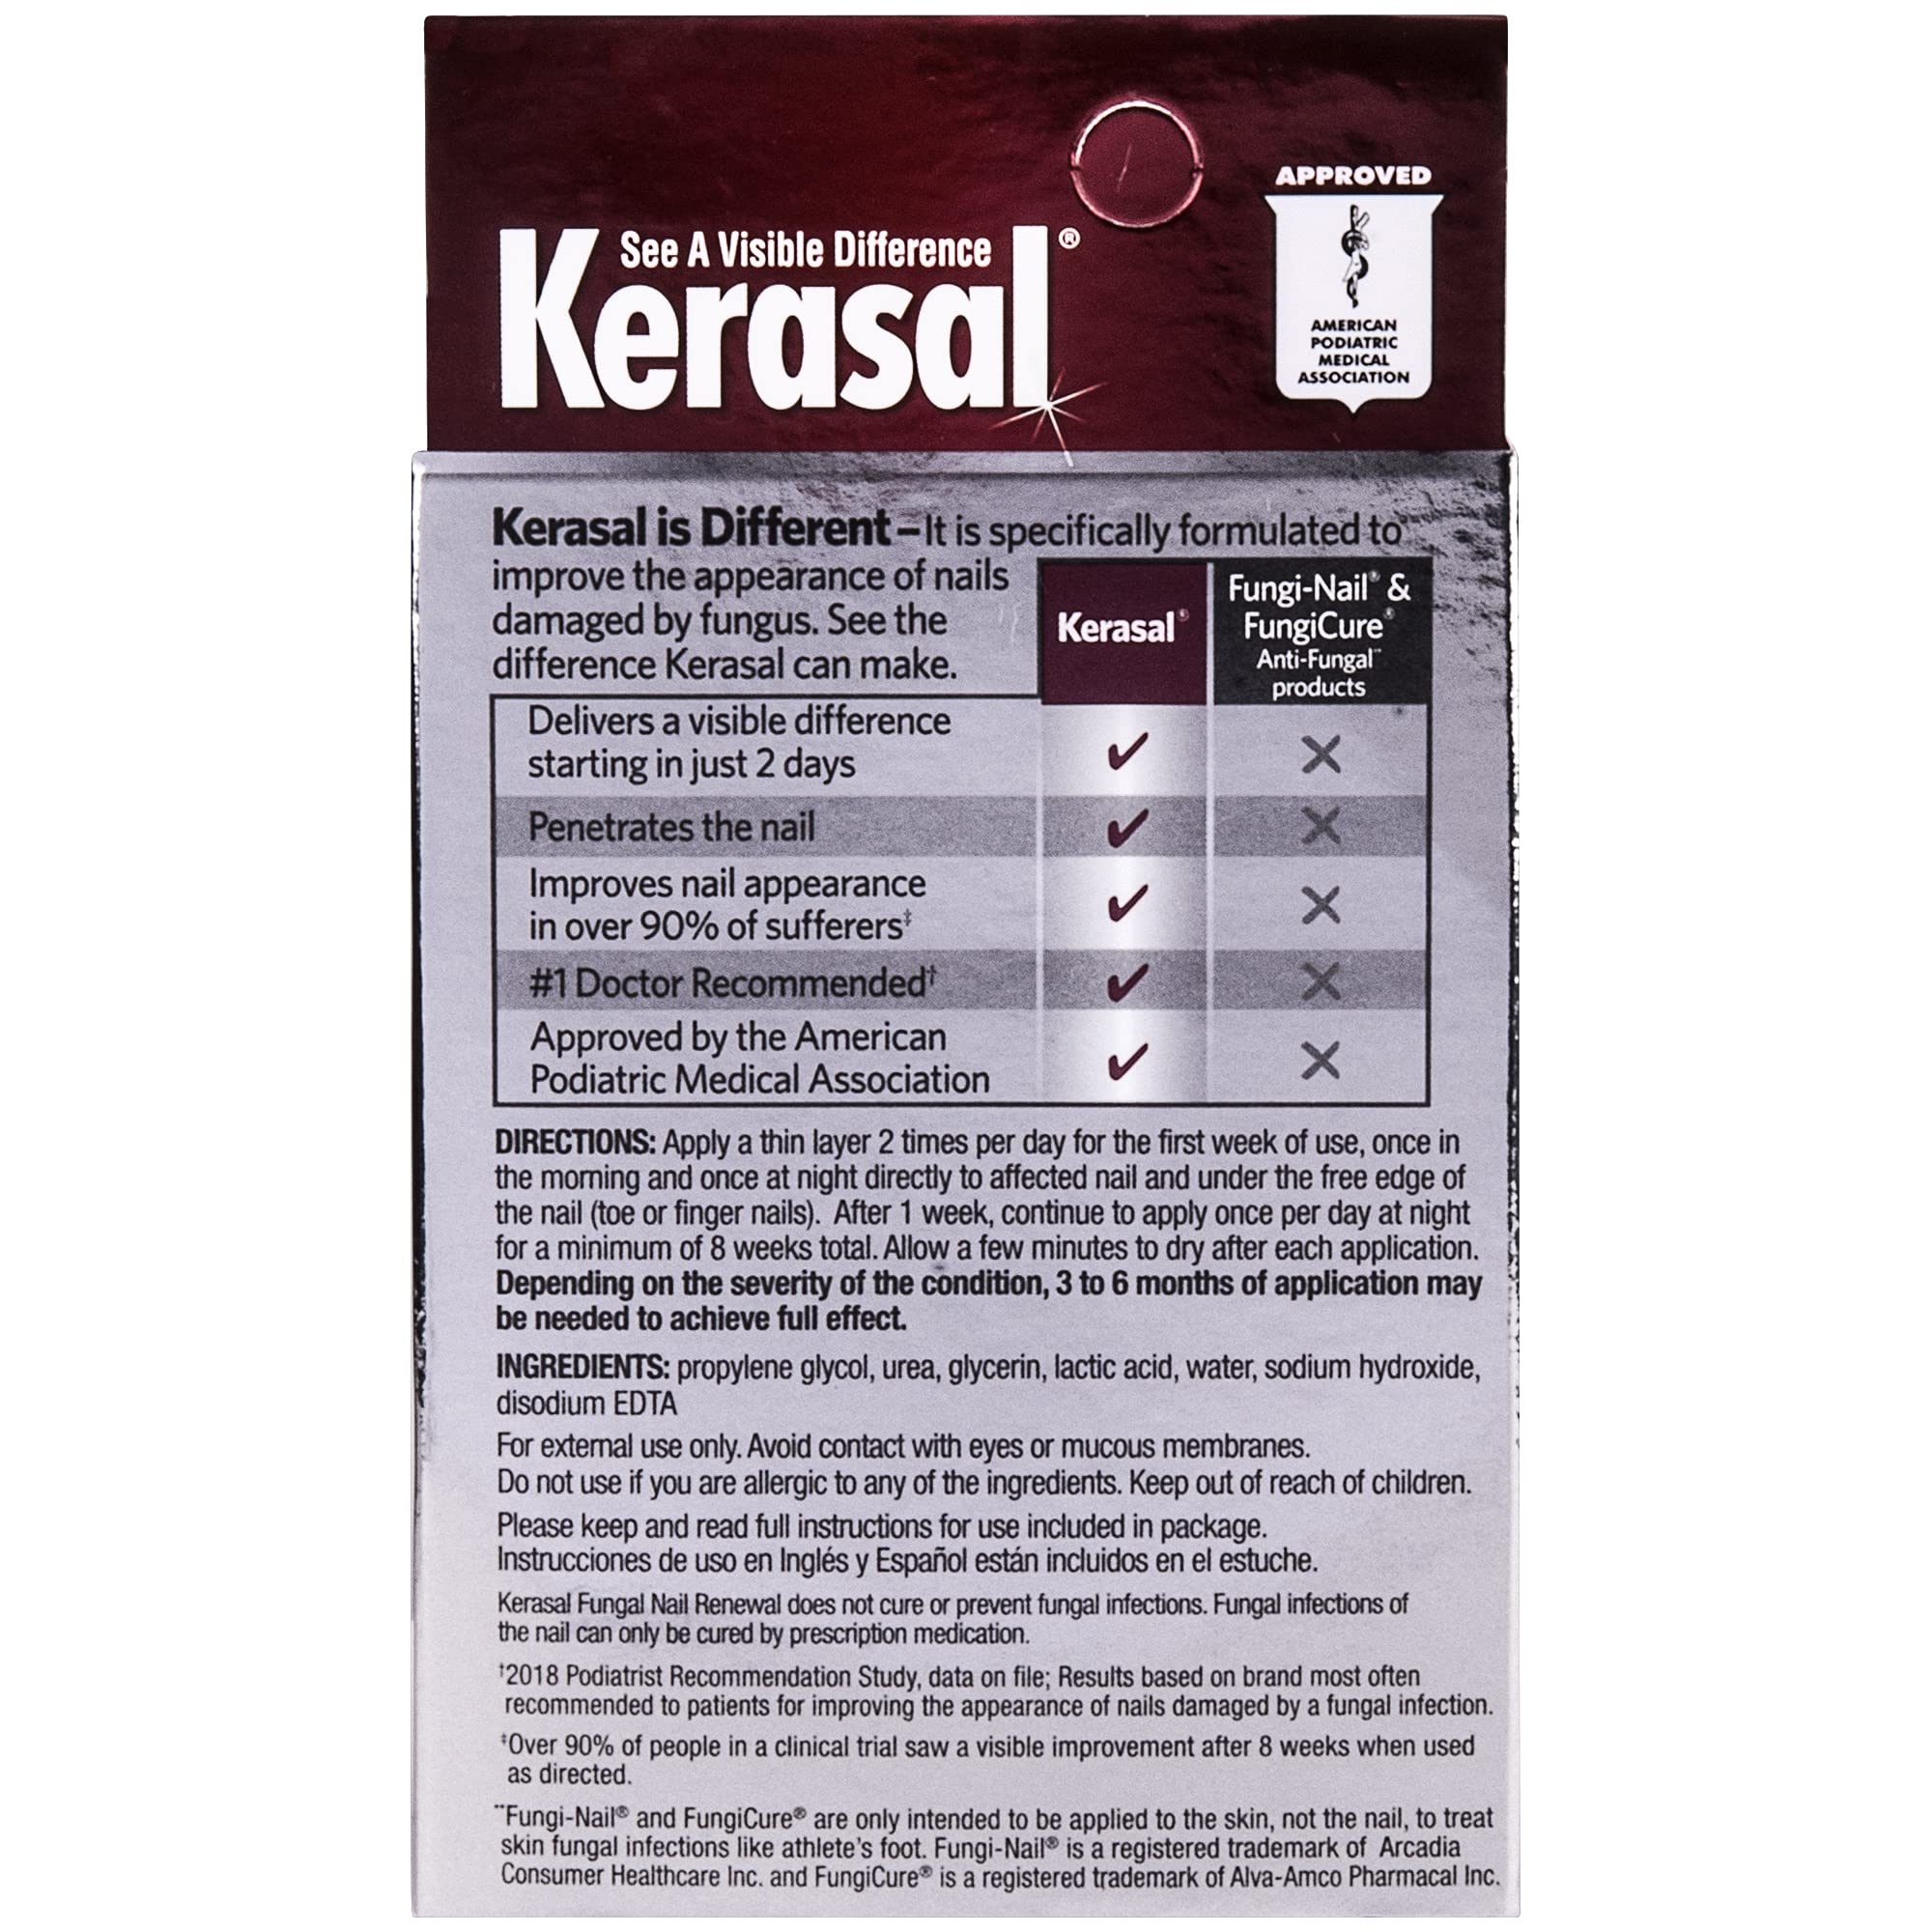 Kerasal Nail Fungal Nail Renewal Treatment for Discolored or Damaged Nails, 10ml (0.33oz) - image 3 of 10